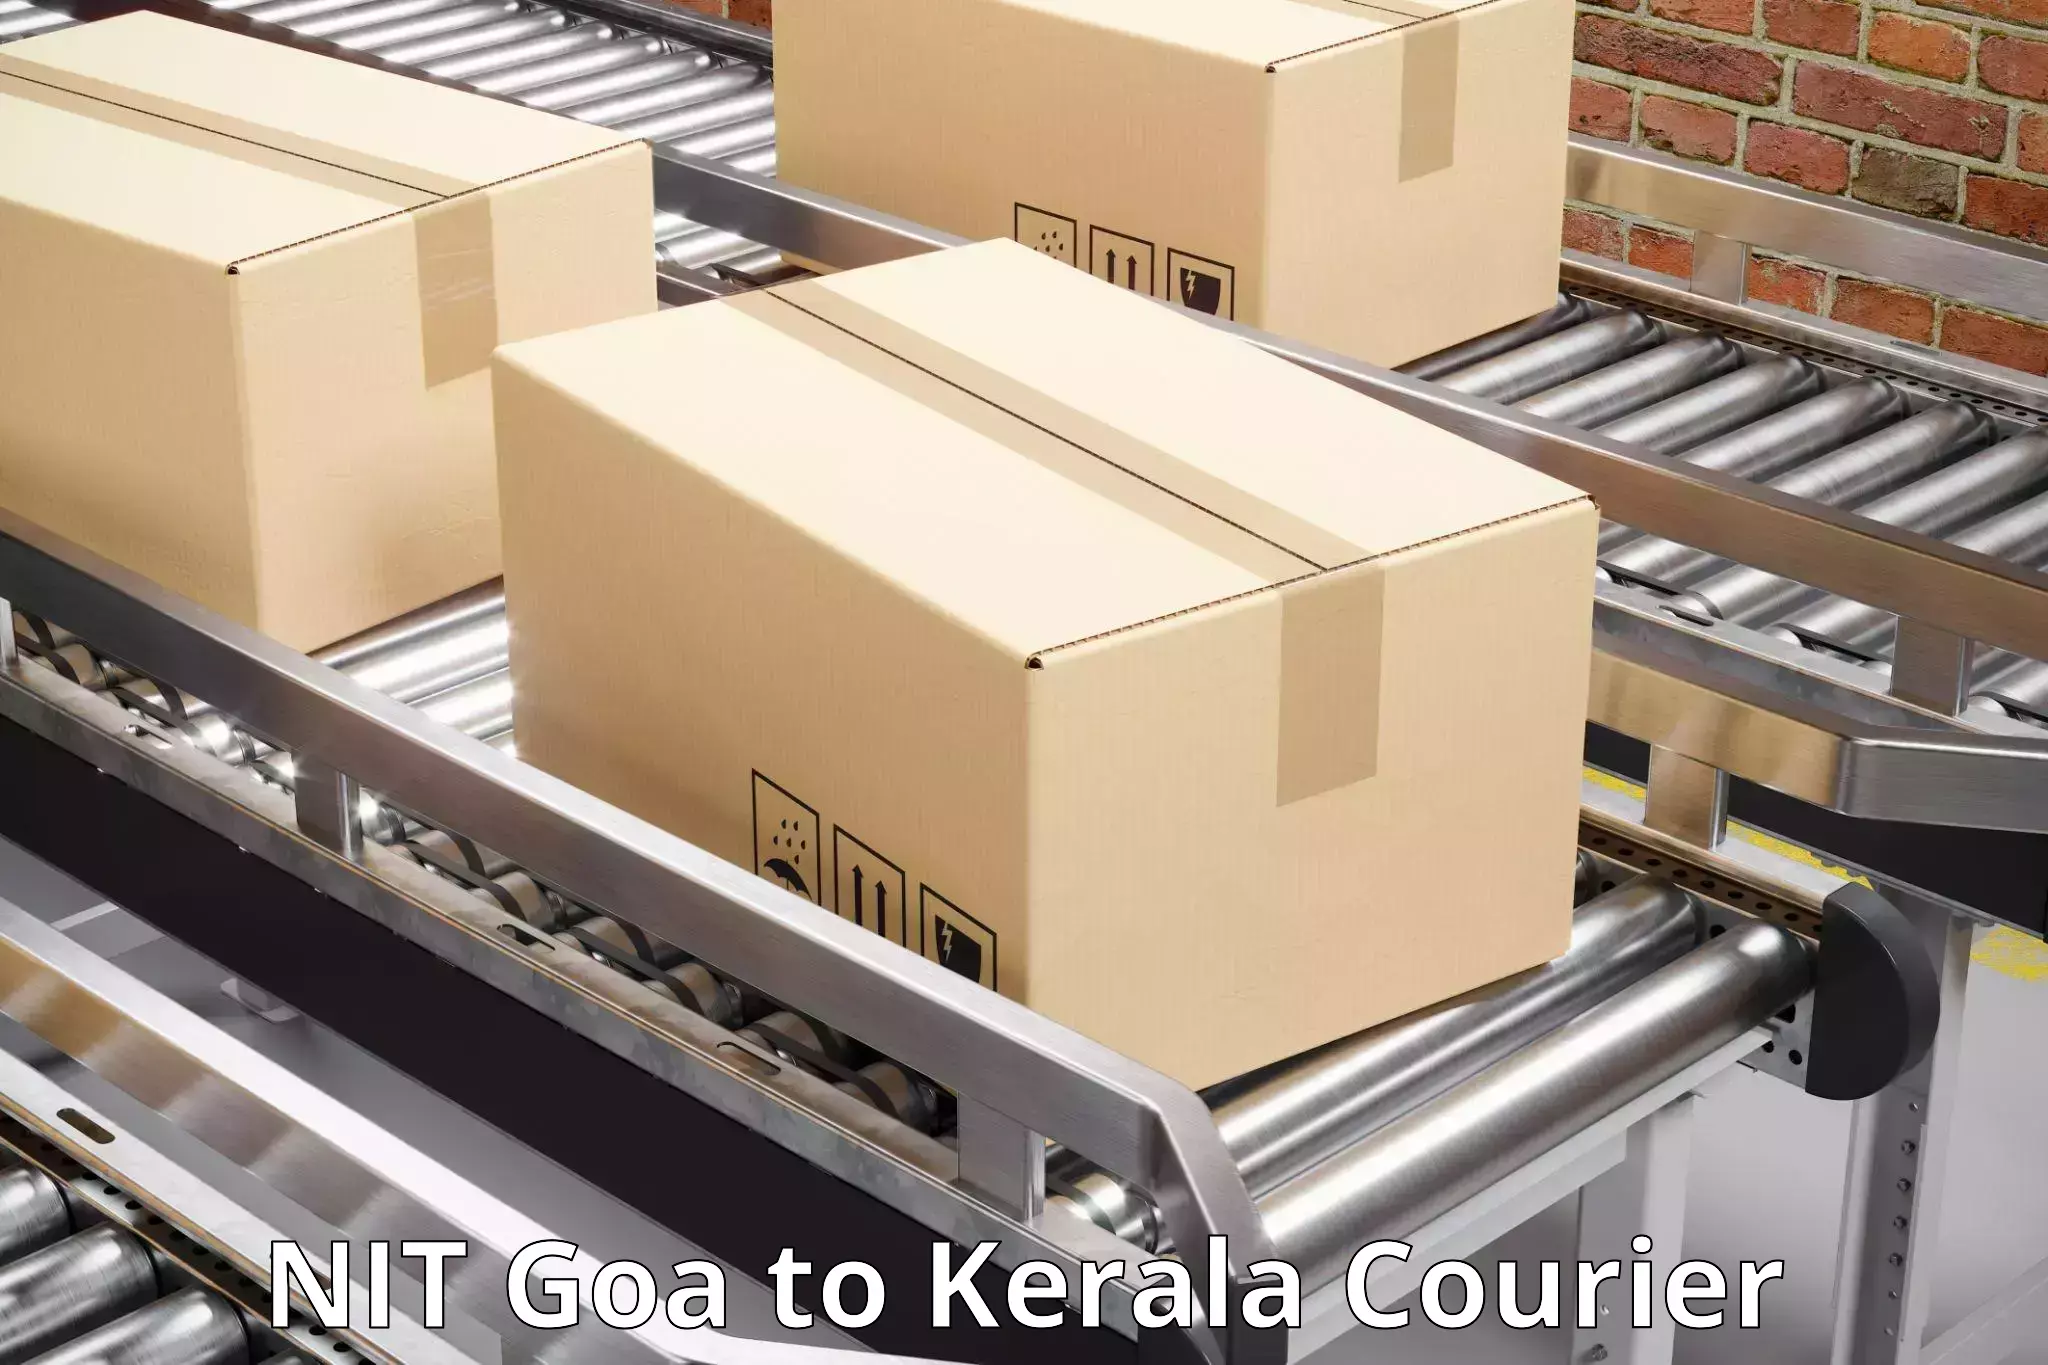 Door-to-door freight service NIT Goa to Ponekkara